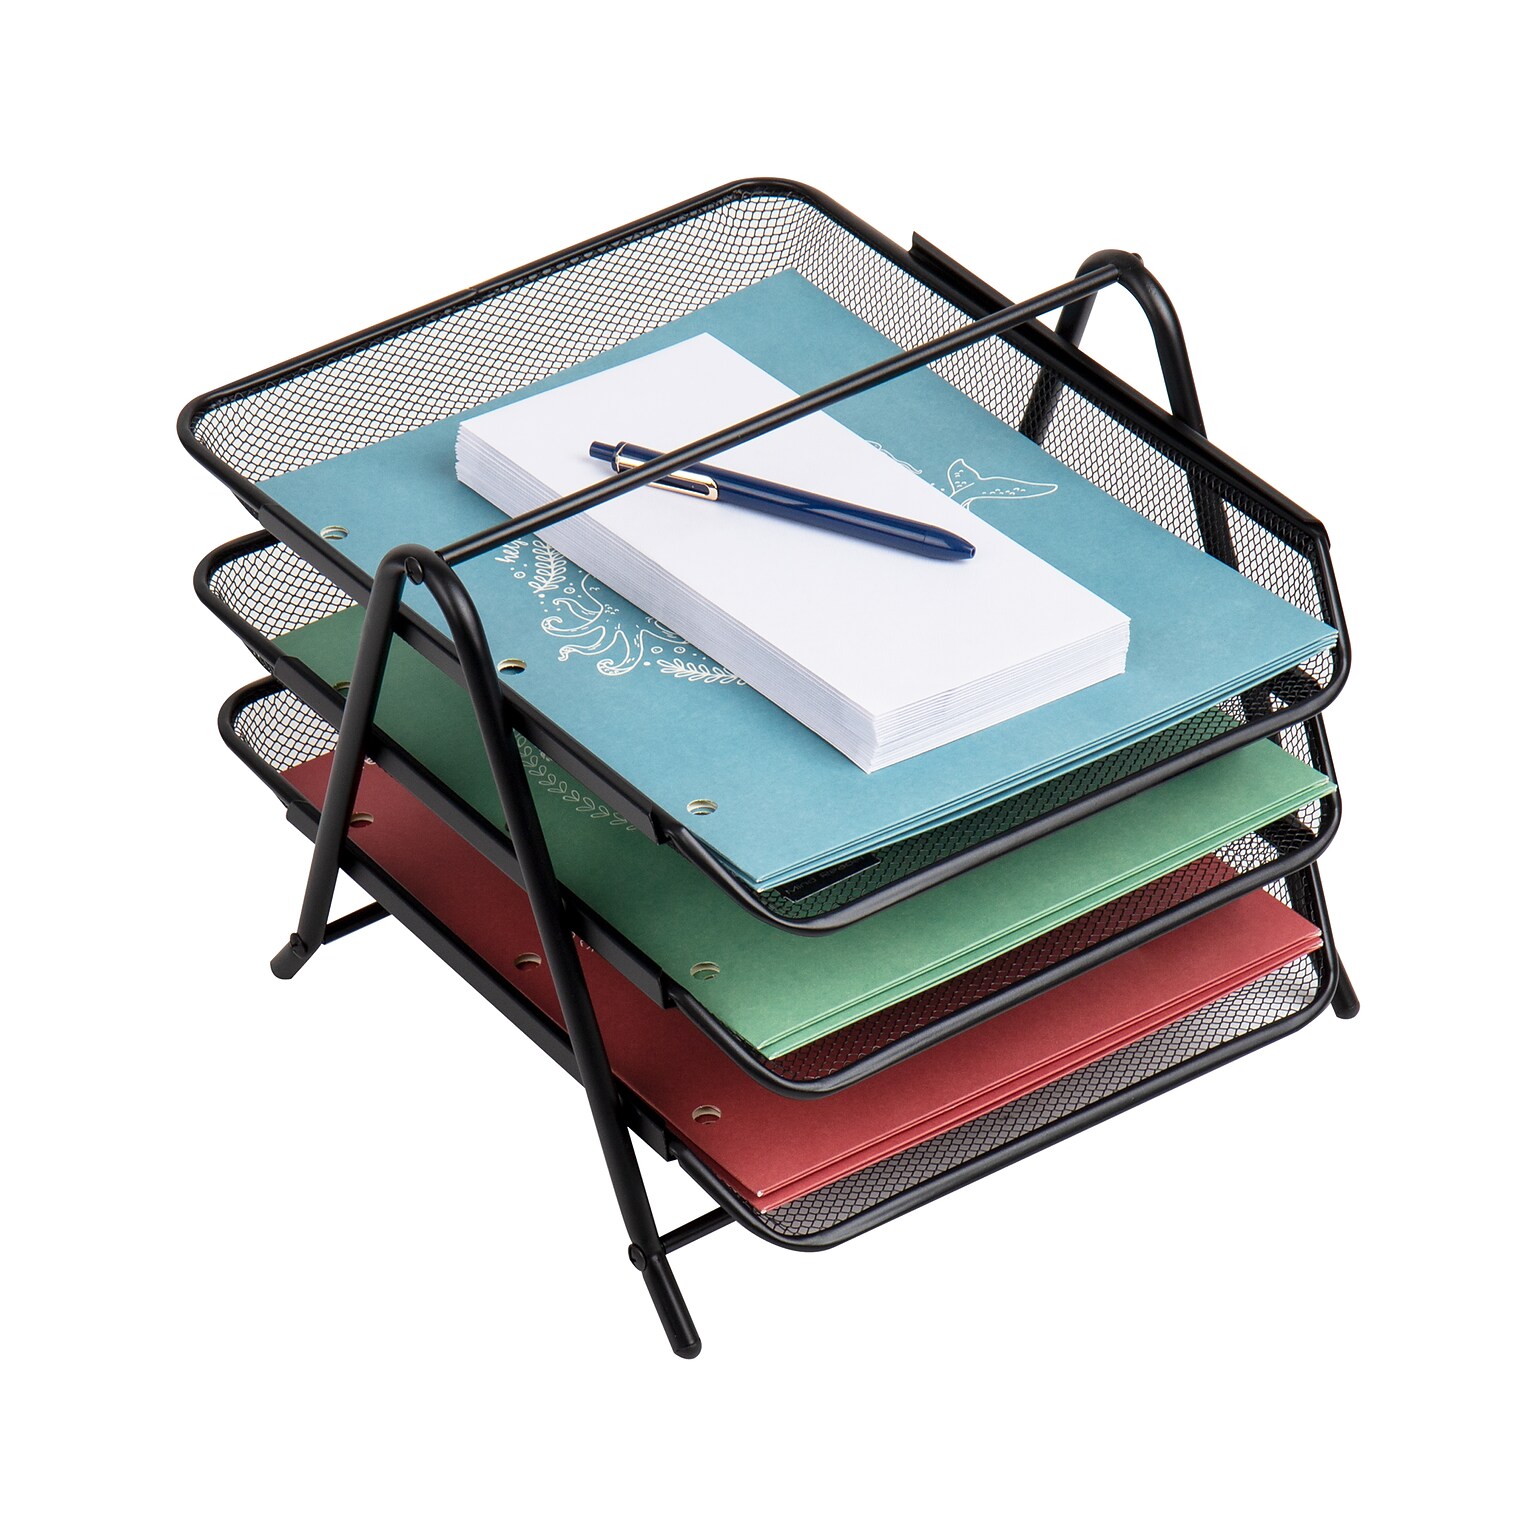 Mind Reader 3-Tier Stackable Paper Desk Tray Organizer, Metal, Black (3TPAPER-BLK)